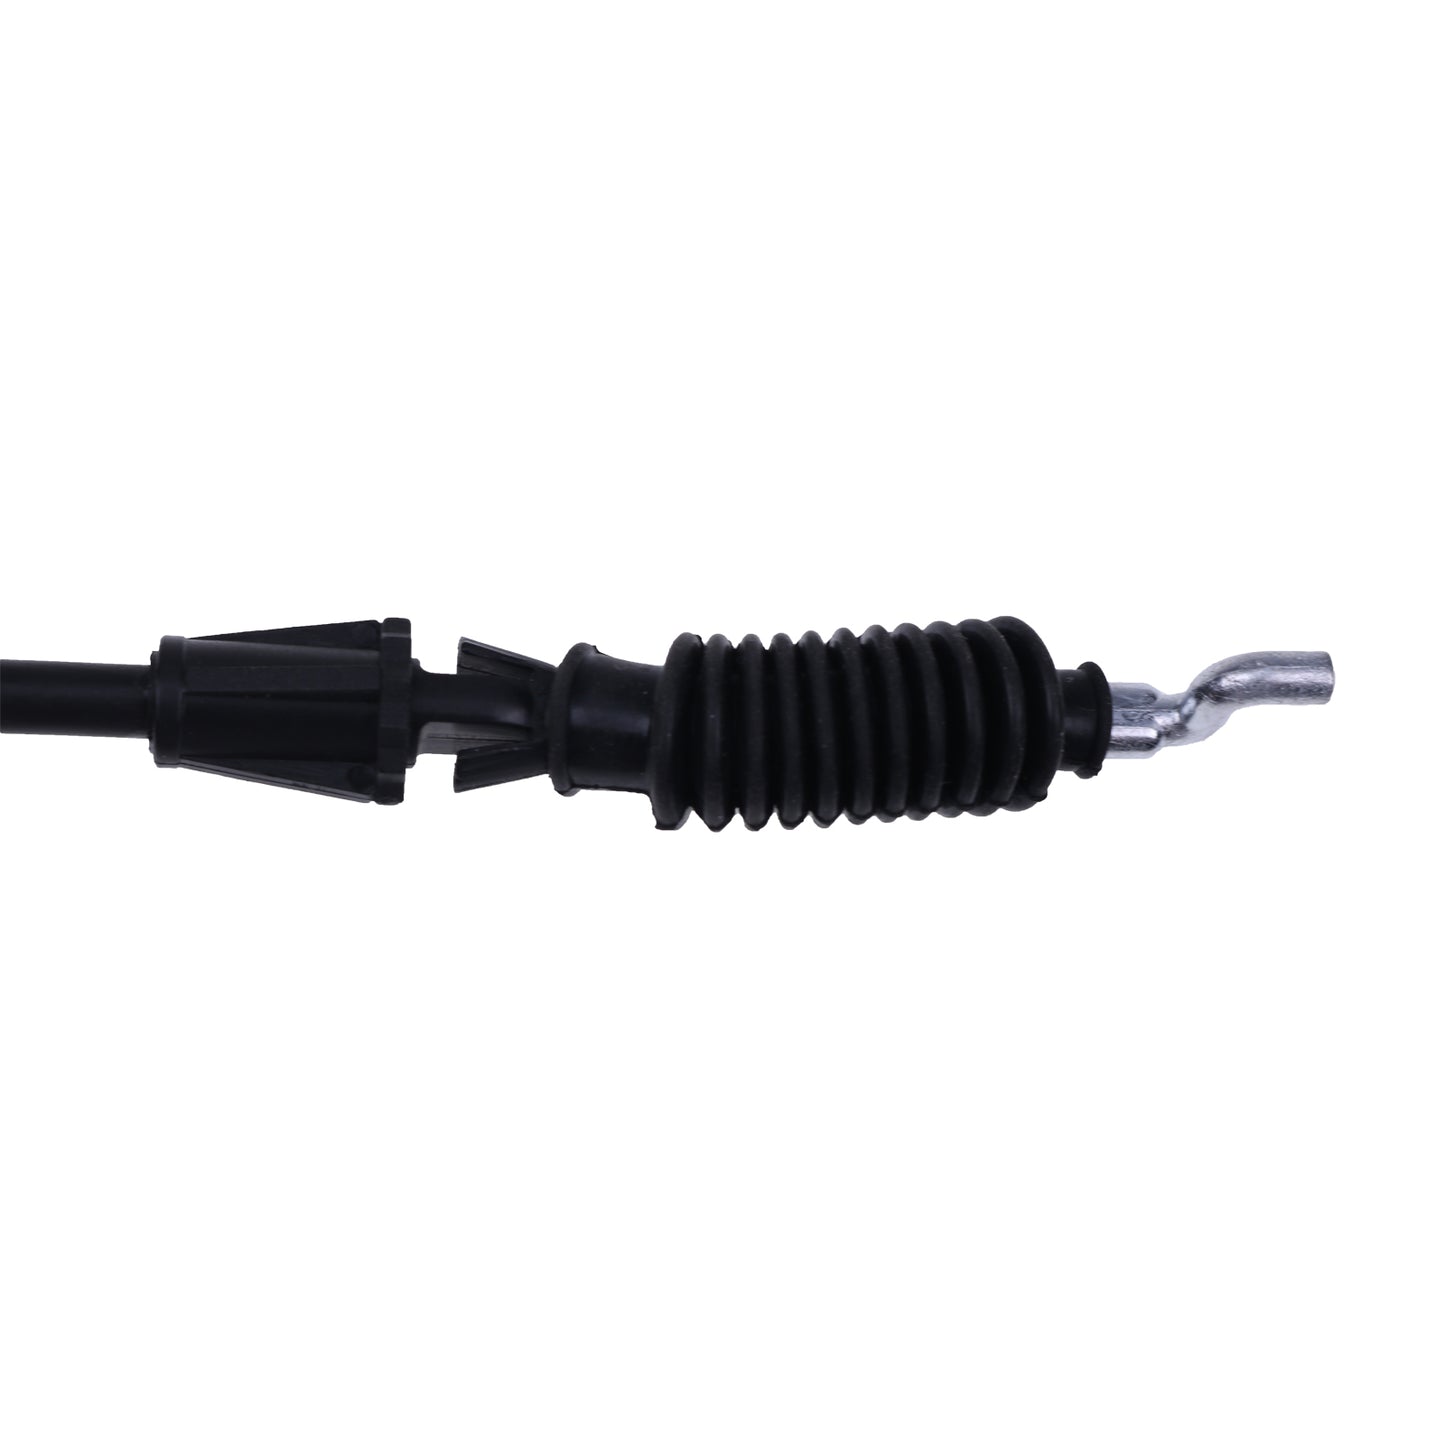 Nuevo cable de cambio de marchas AM148260 compatible con John Deere Gator XUV 550 560 y S4 550 560